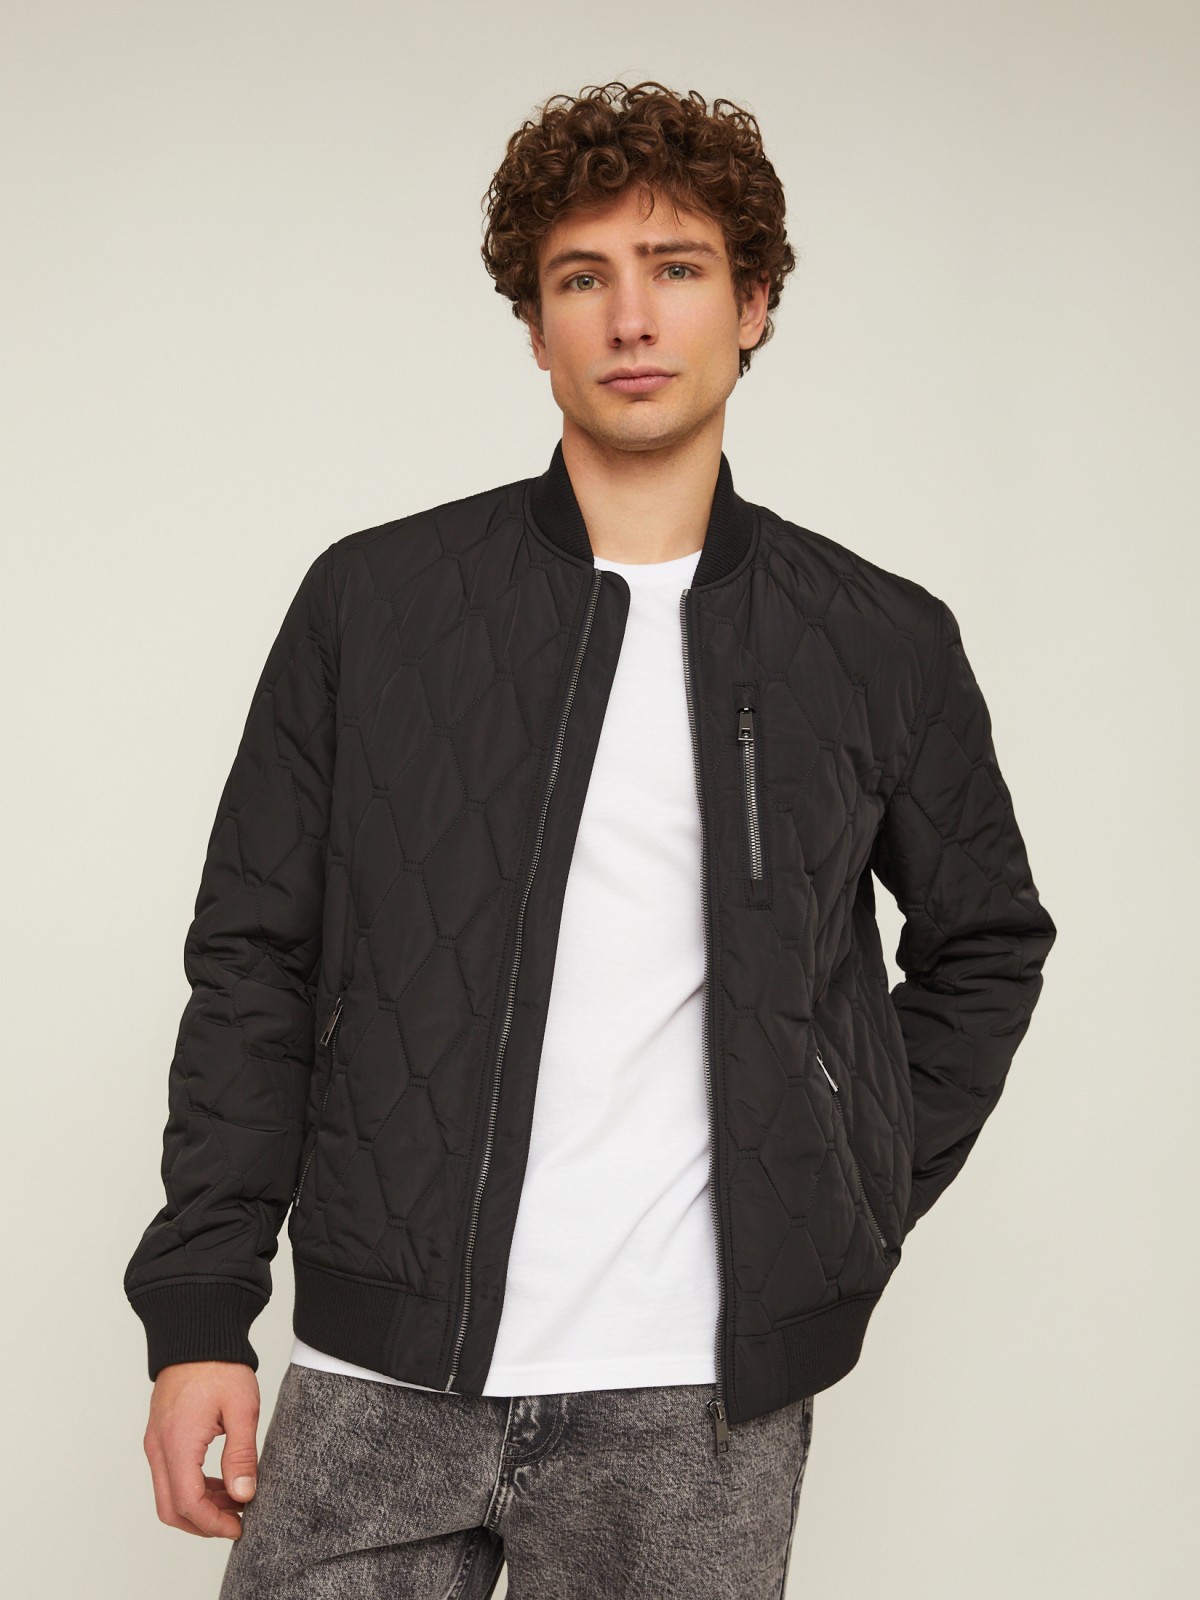 Утеплённая стёганая куртка-бомбер с воротником-стойкой zolla 014135139064, цвет черный, размер M